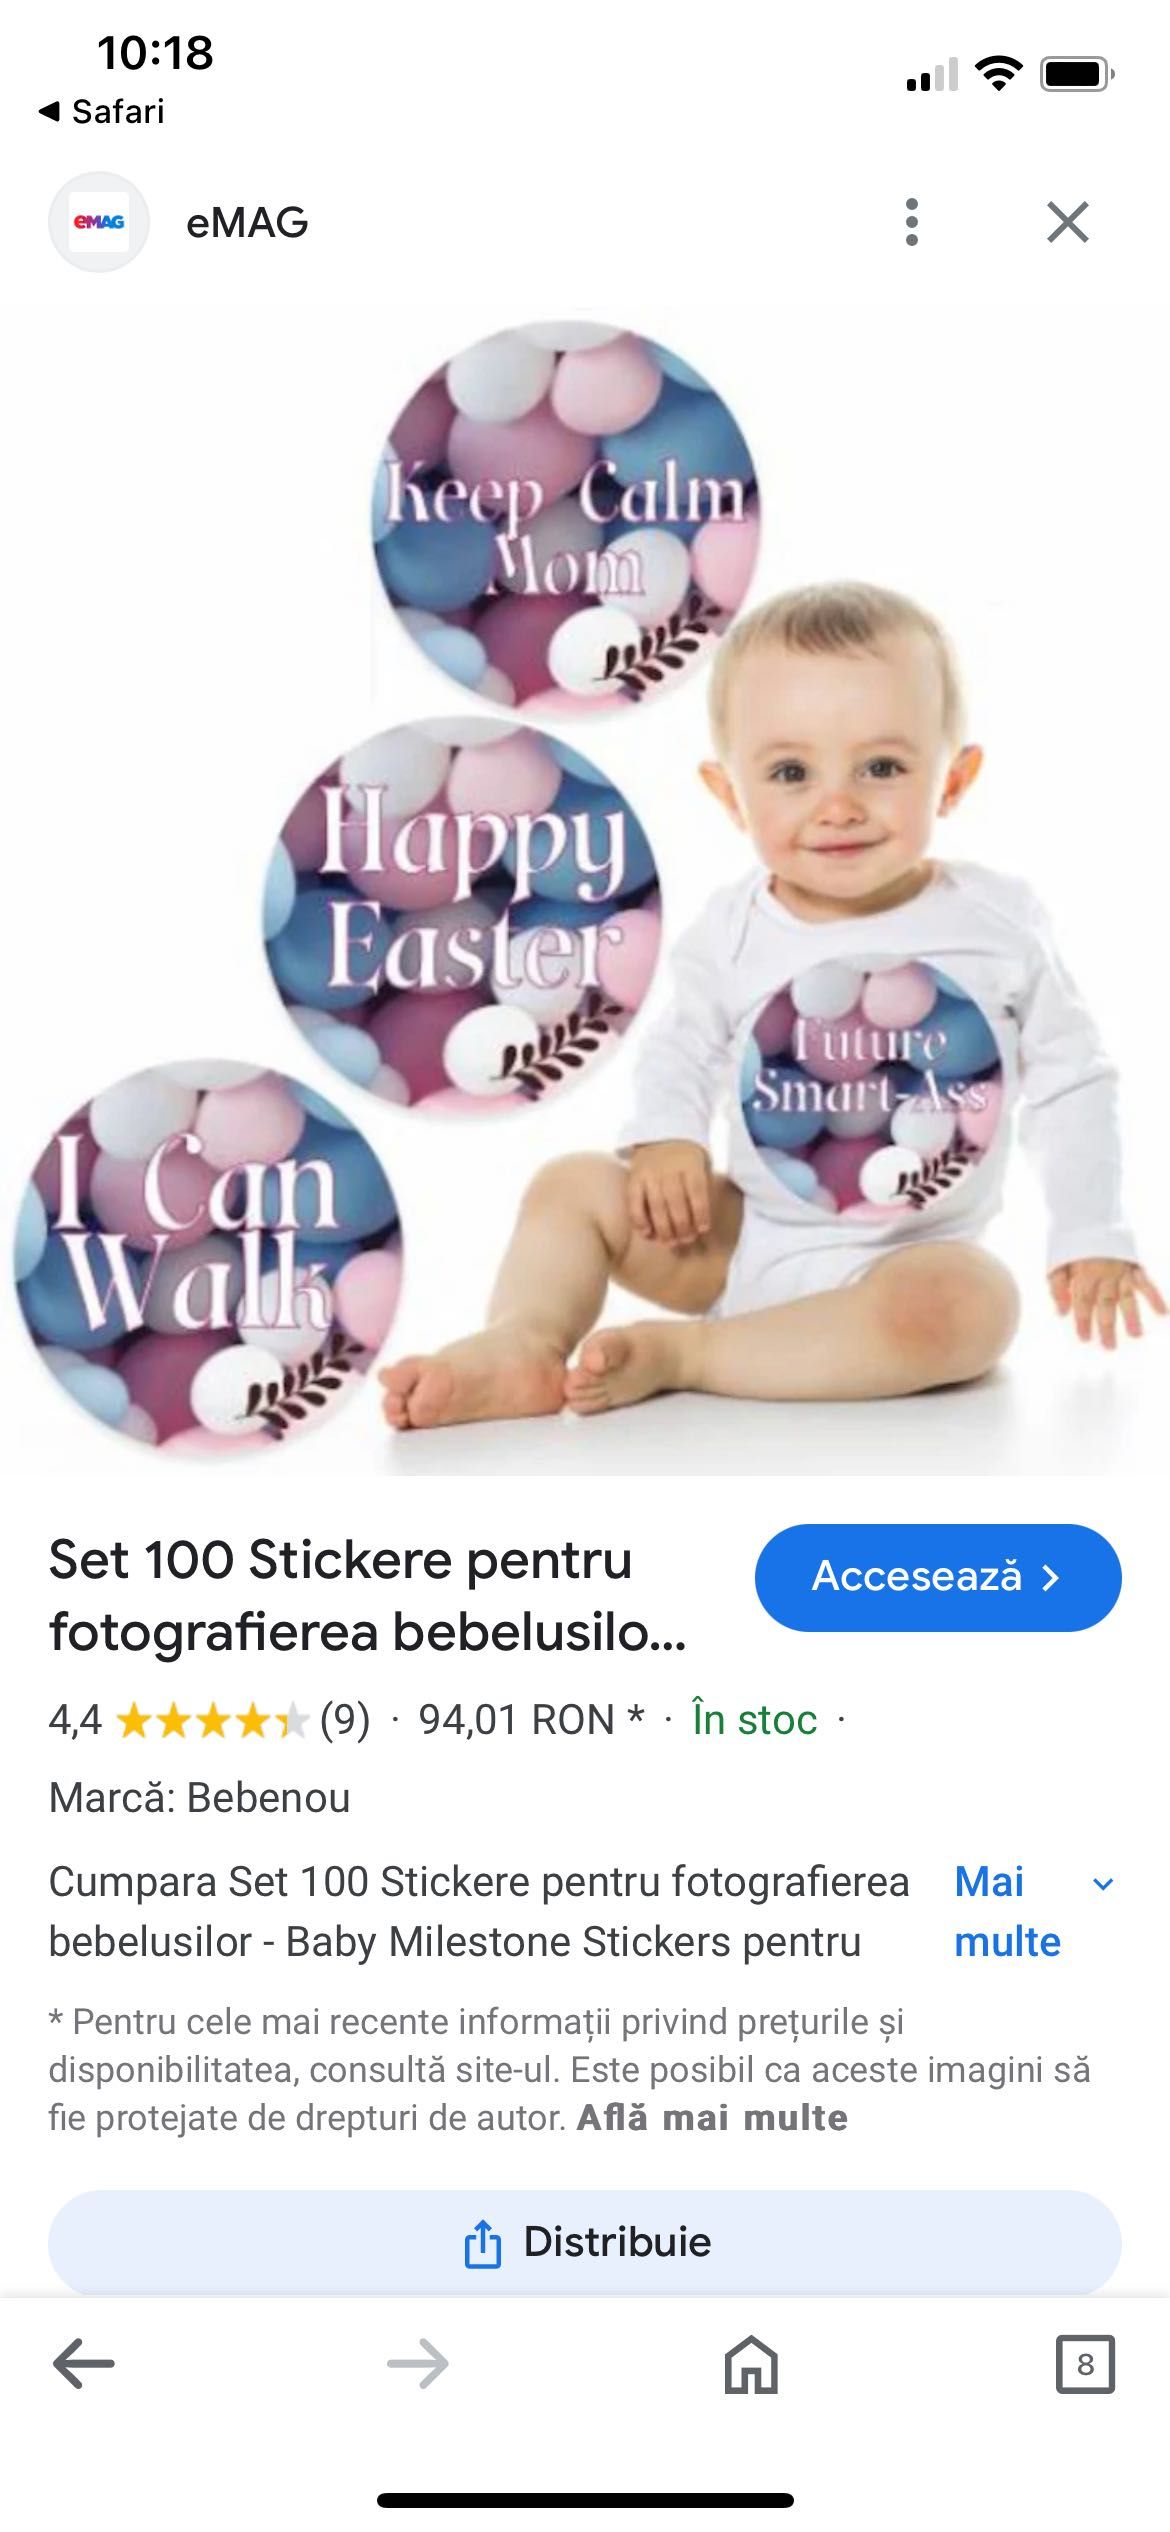 Set 100 Stickere pt fotografierea bebelușilor -Baby Milestone Stickers